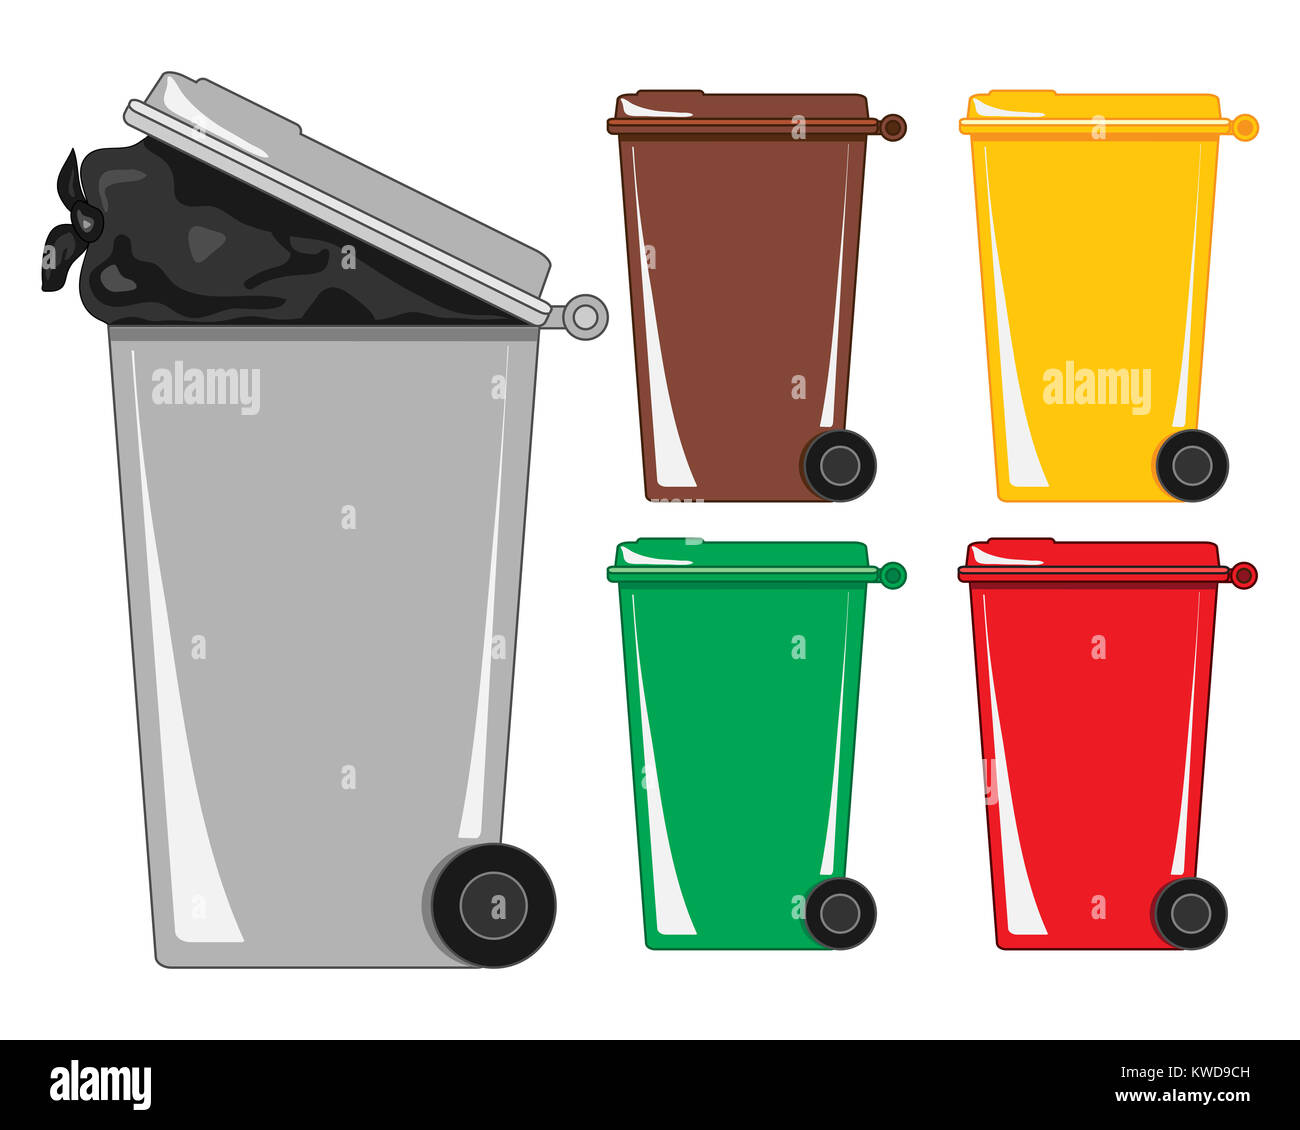 Une illustration d'une poubelle grise avec un sac de détritus et montrant différents bacs de recyclage sur un fond blanc Banque D'Images